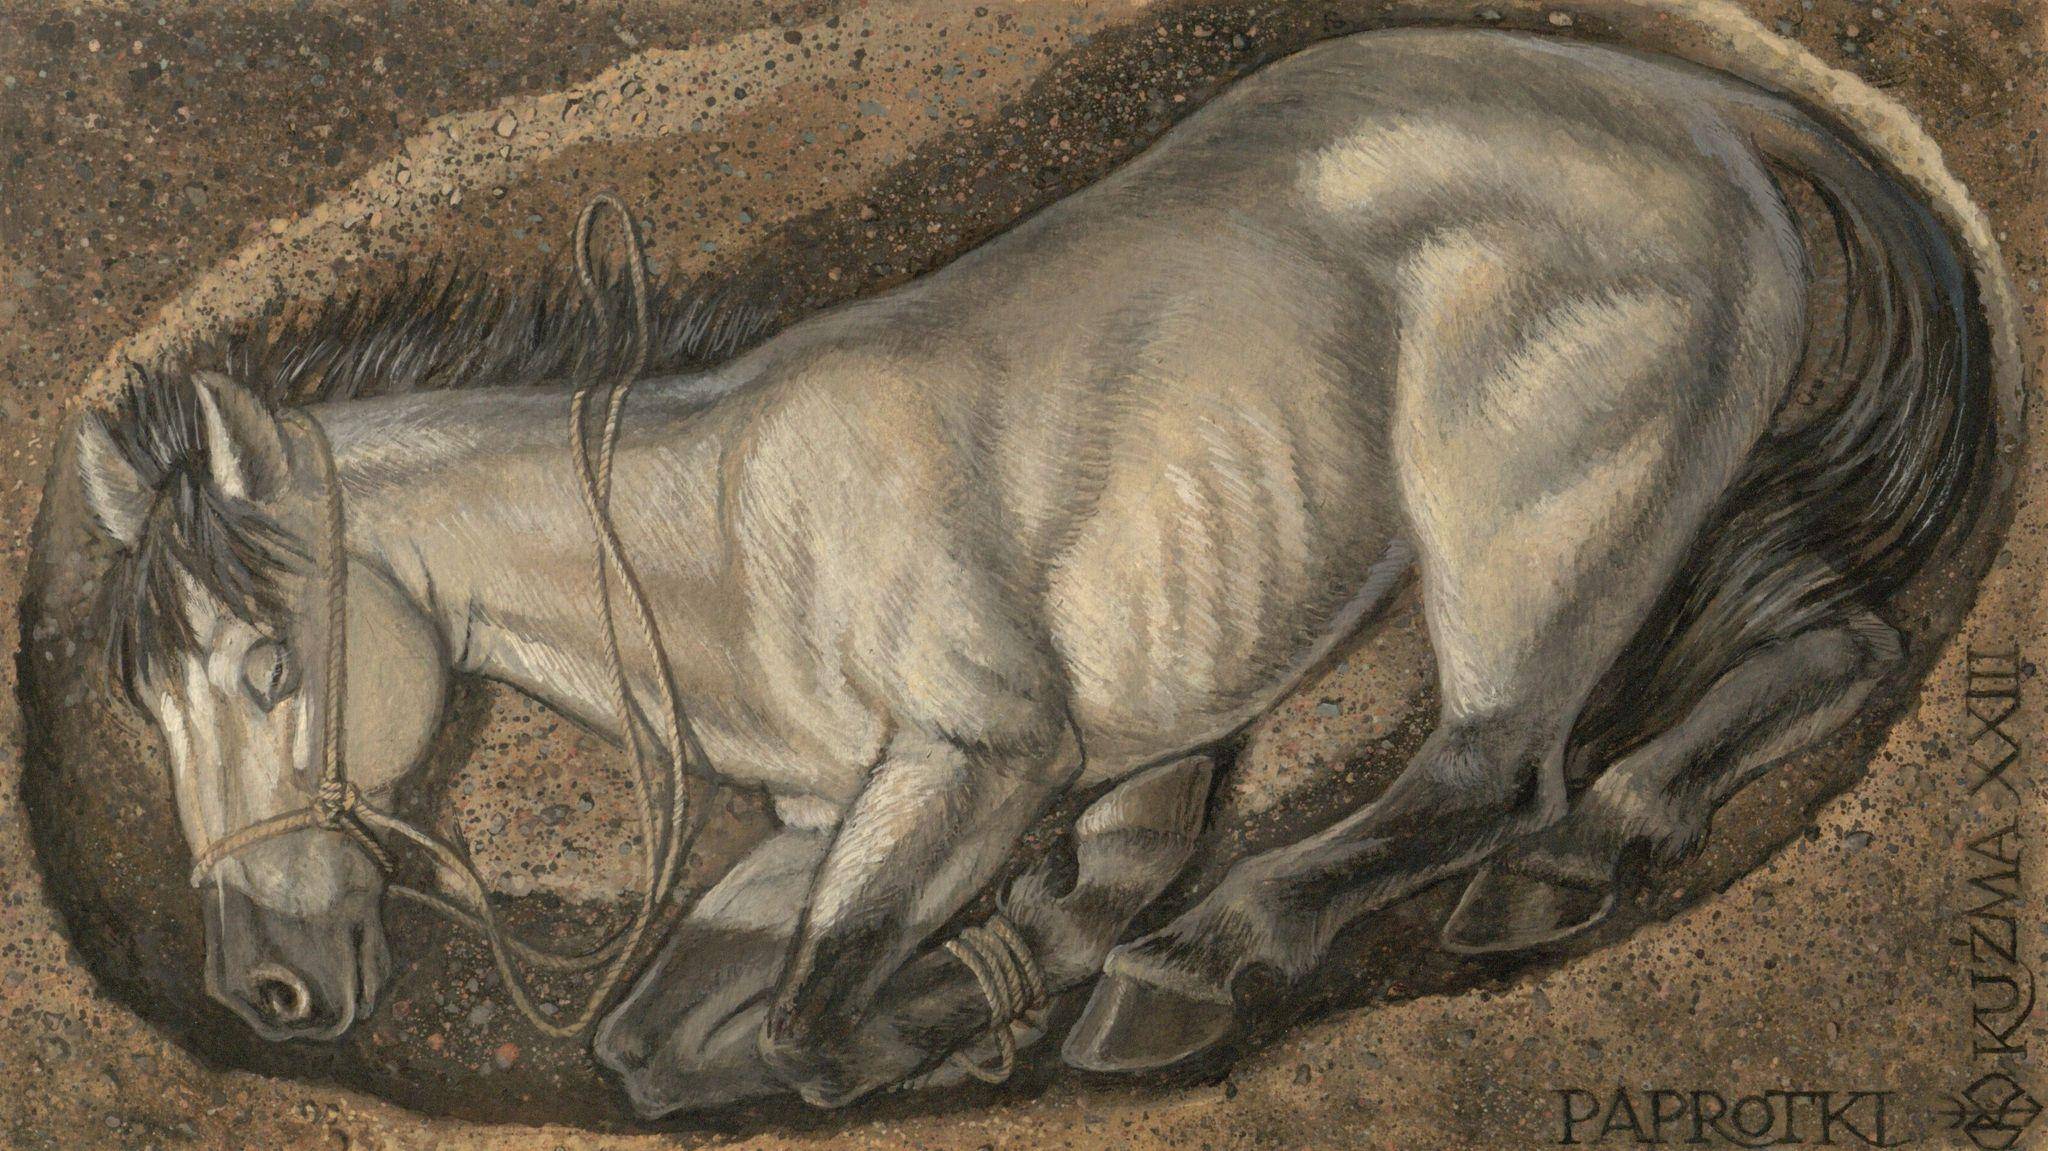 Rekonstrukcja rytualnej ofiar z konia, inspirowana szczątkami konia odkrytego w Paprotkach Kolońskich